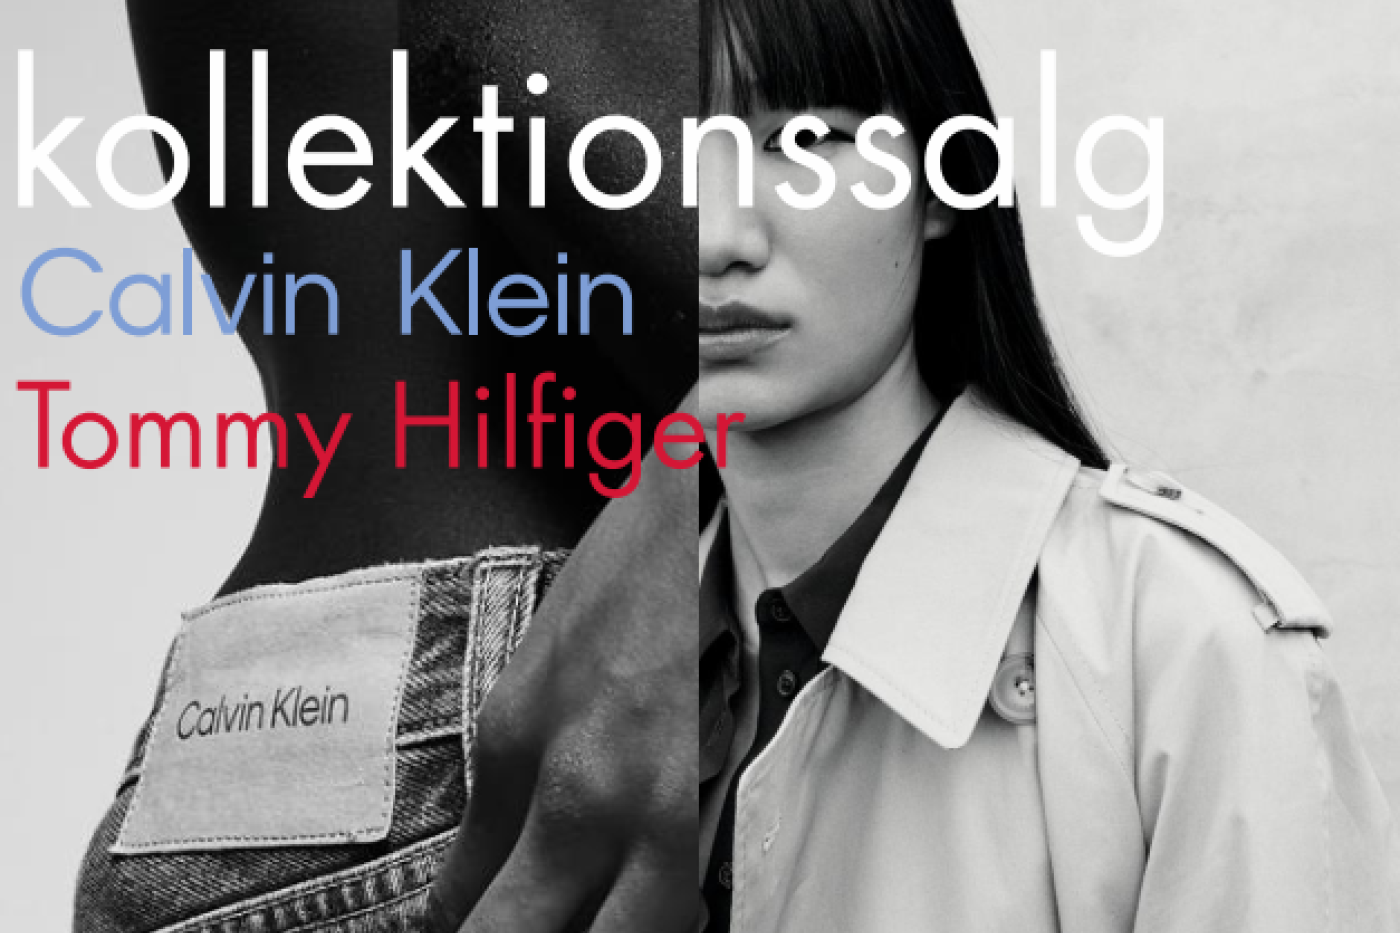 Tommy Hilfiger & Calvin Klein kollektionssalg